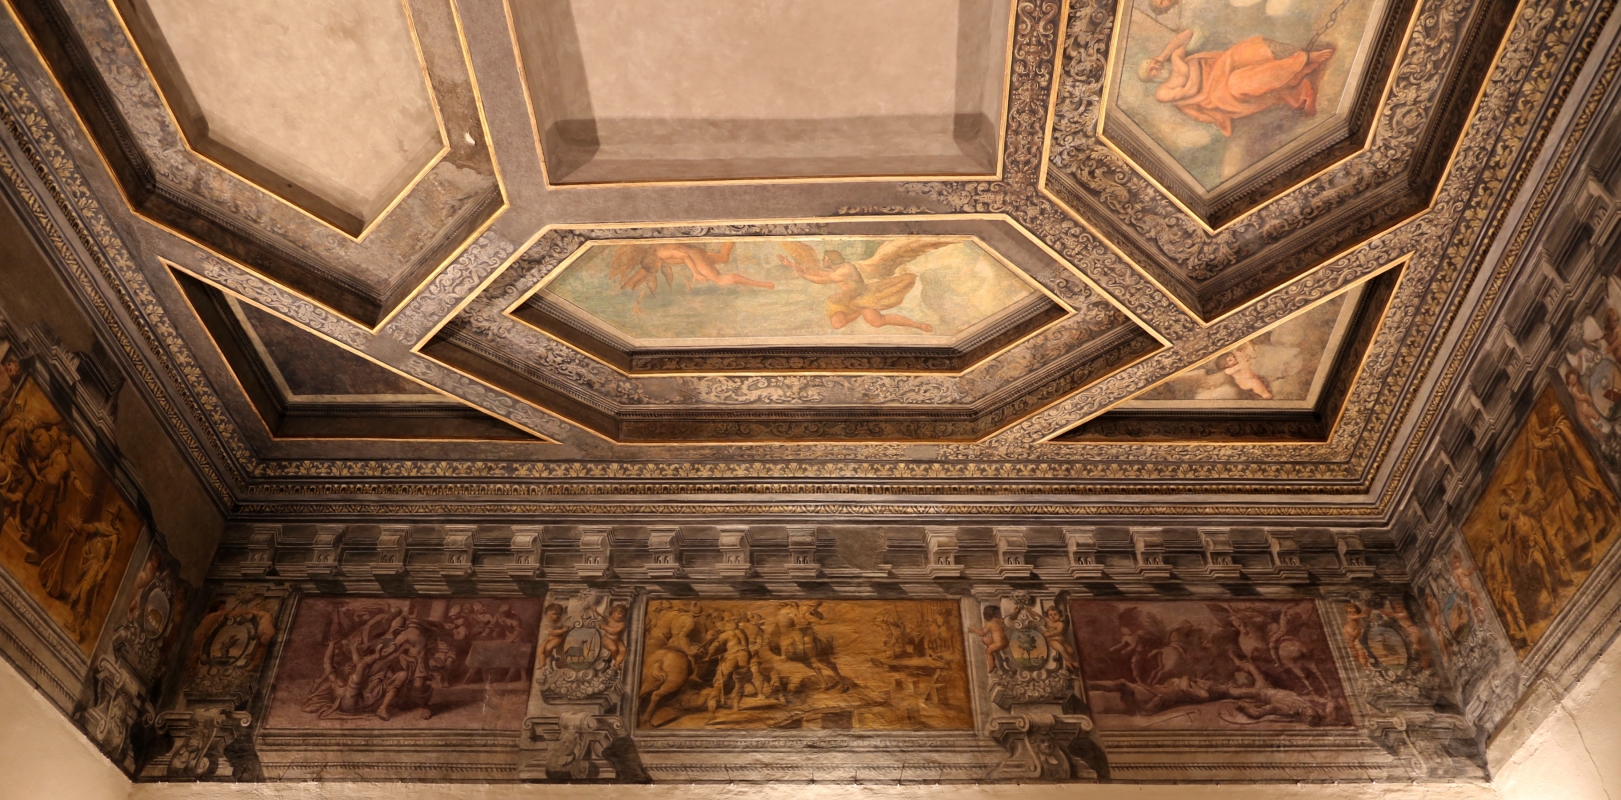 Gualtieri, palazzo bentivoglio, sala di icaro, fregio con storie di roma da tito livio, 1600-05 circa, 04 - Sailko